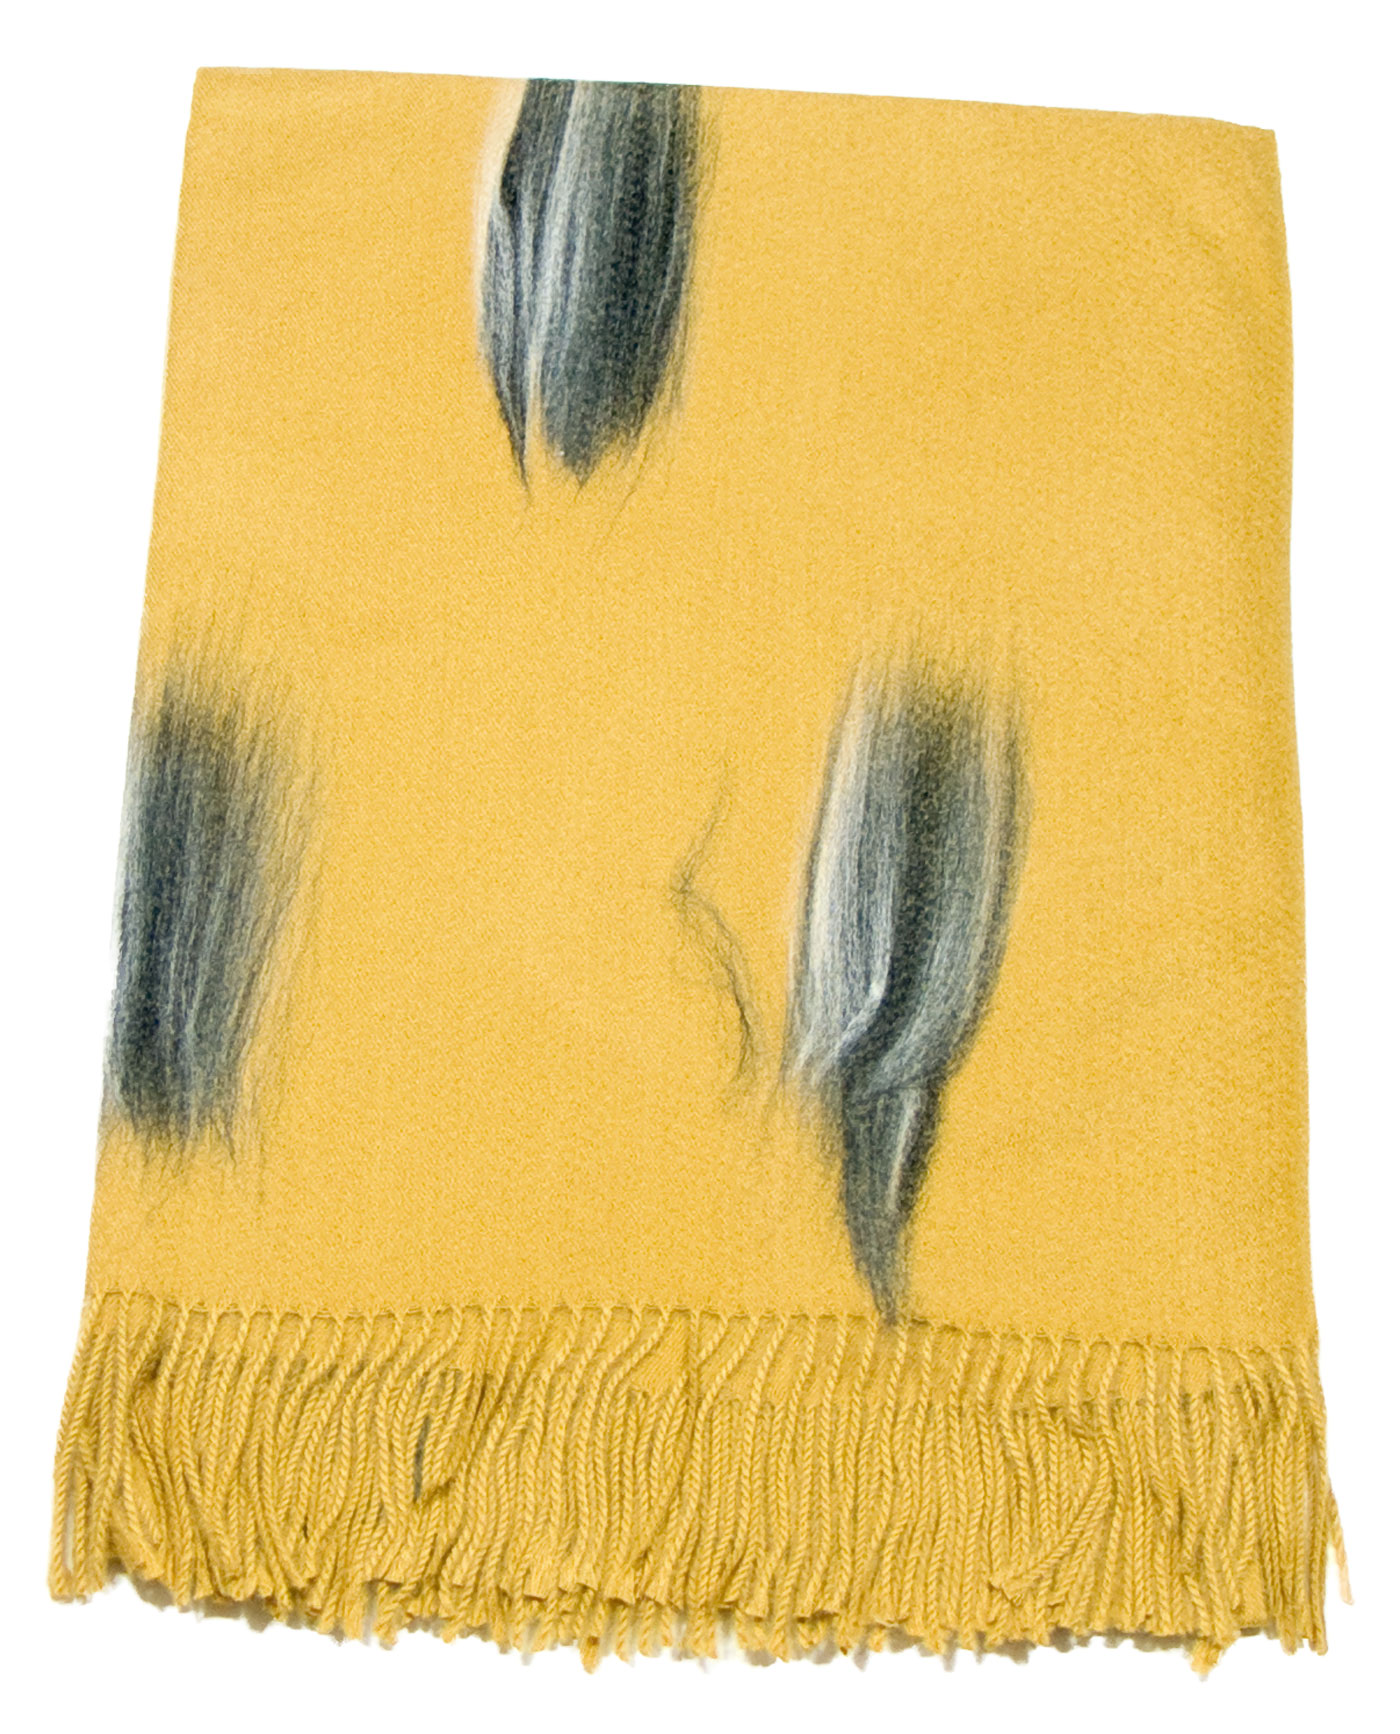 étole jaune moutarde cachemire laine plume 1